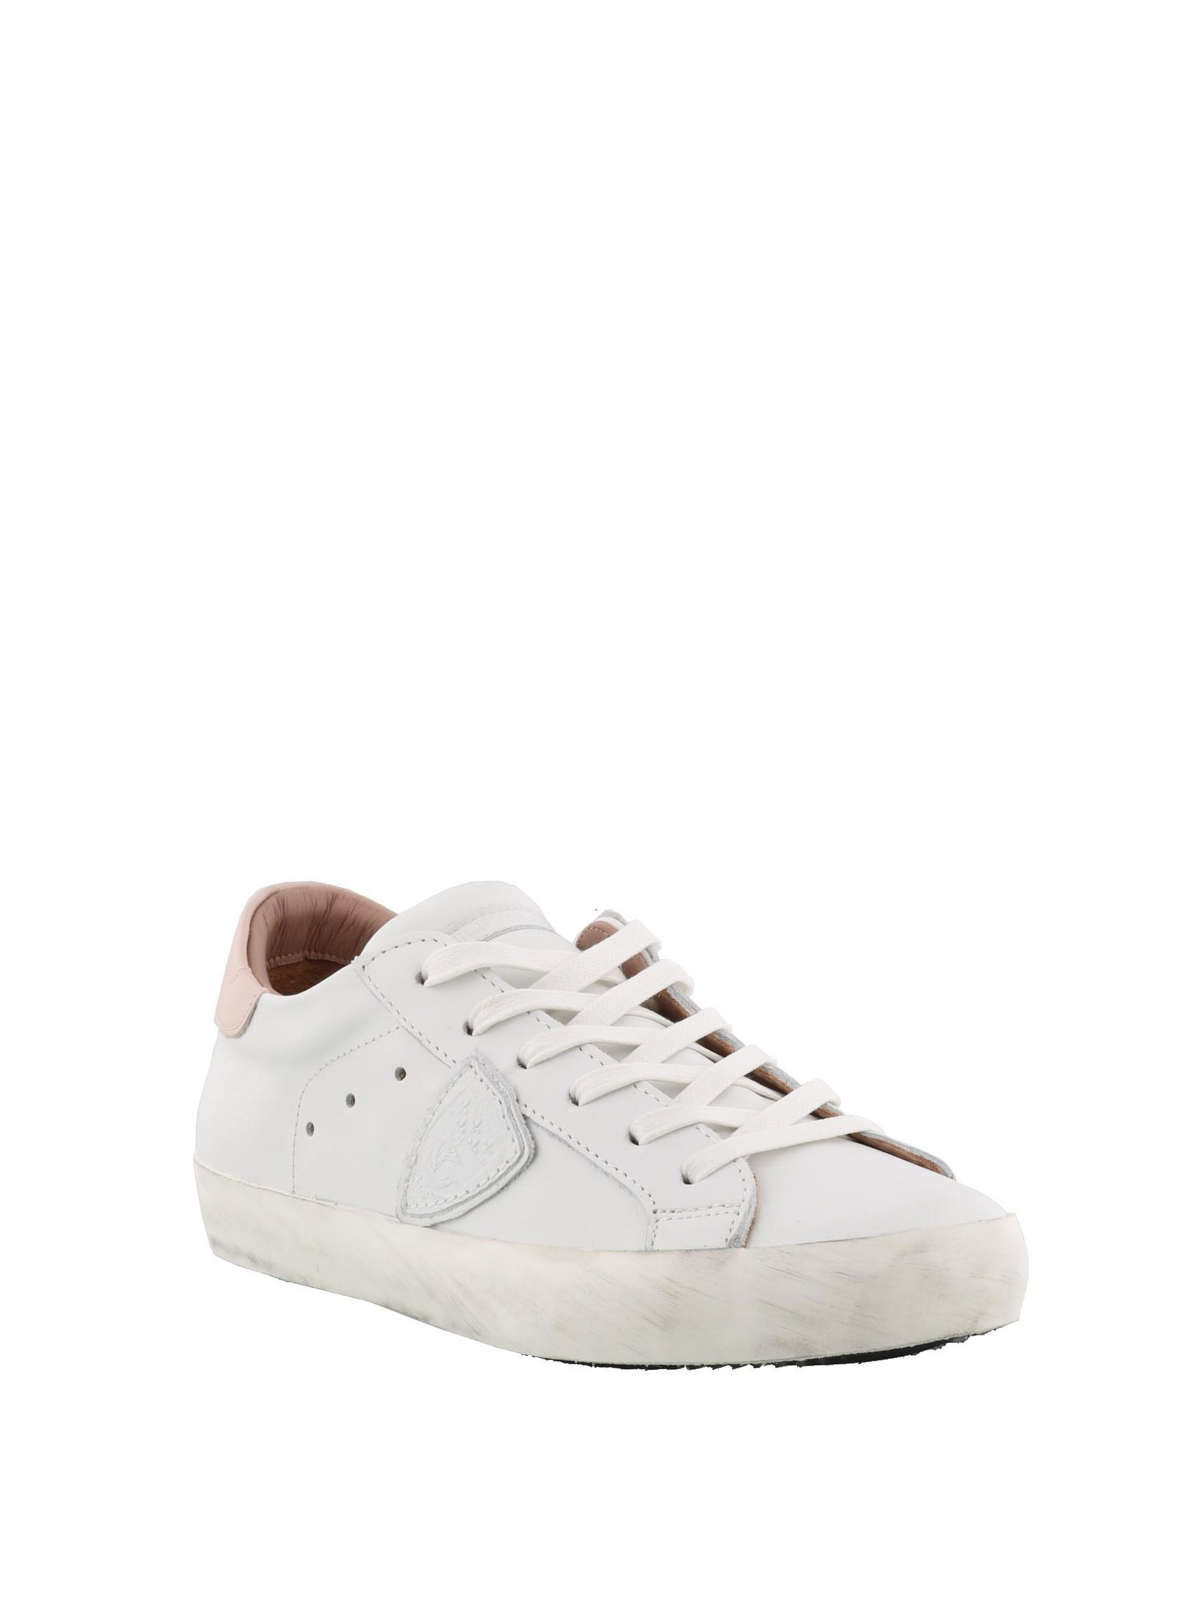 Philippe Model - Sneaker Paris Basic bianche e talloncino rosa - sneakers -  CLLDV036